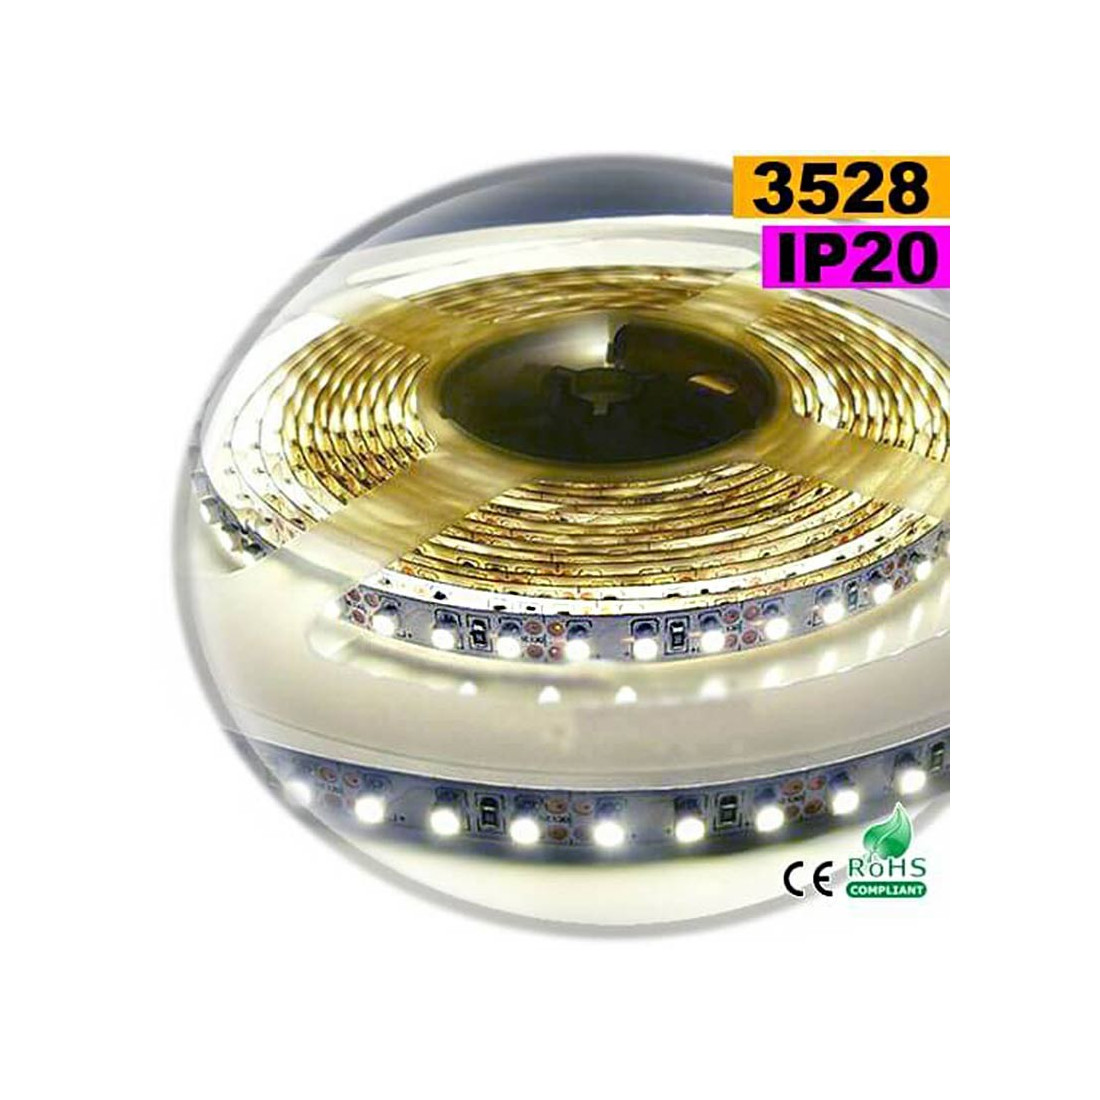 Ampoule LED maïs B22 7 Watts Spectra color 42 LED SMD 5630 230 Volts